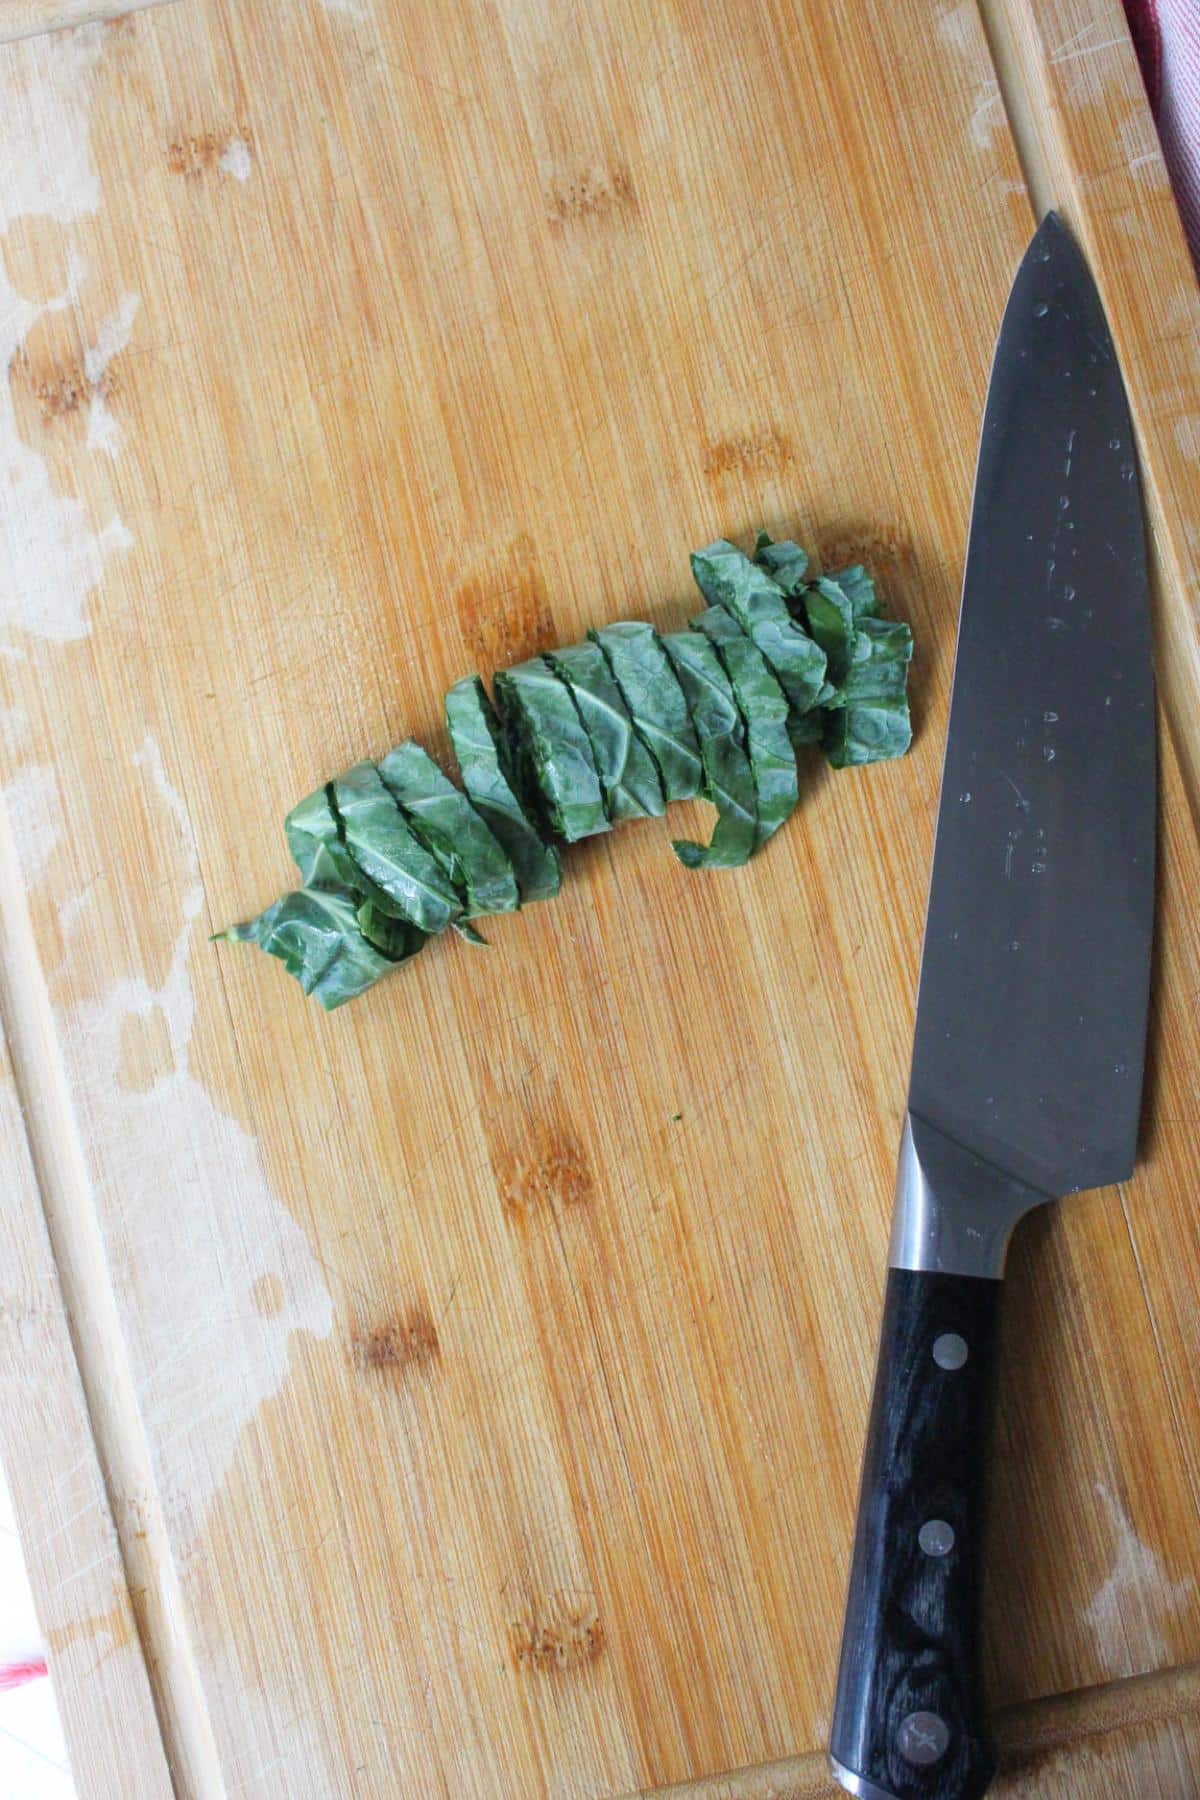 Collard green leaf being cut up on a cutting board.